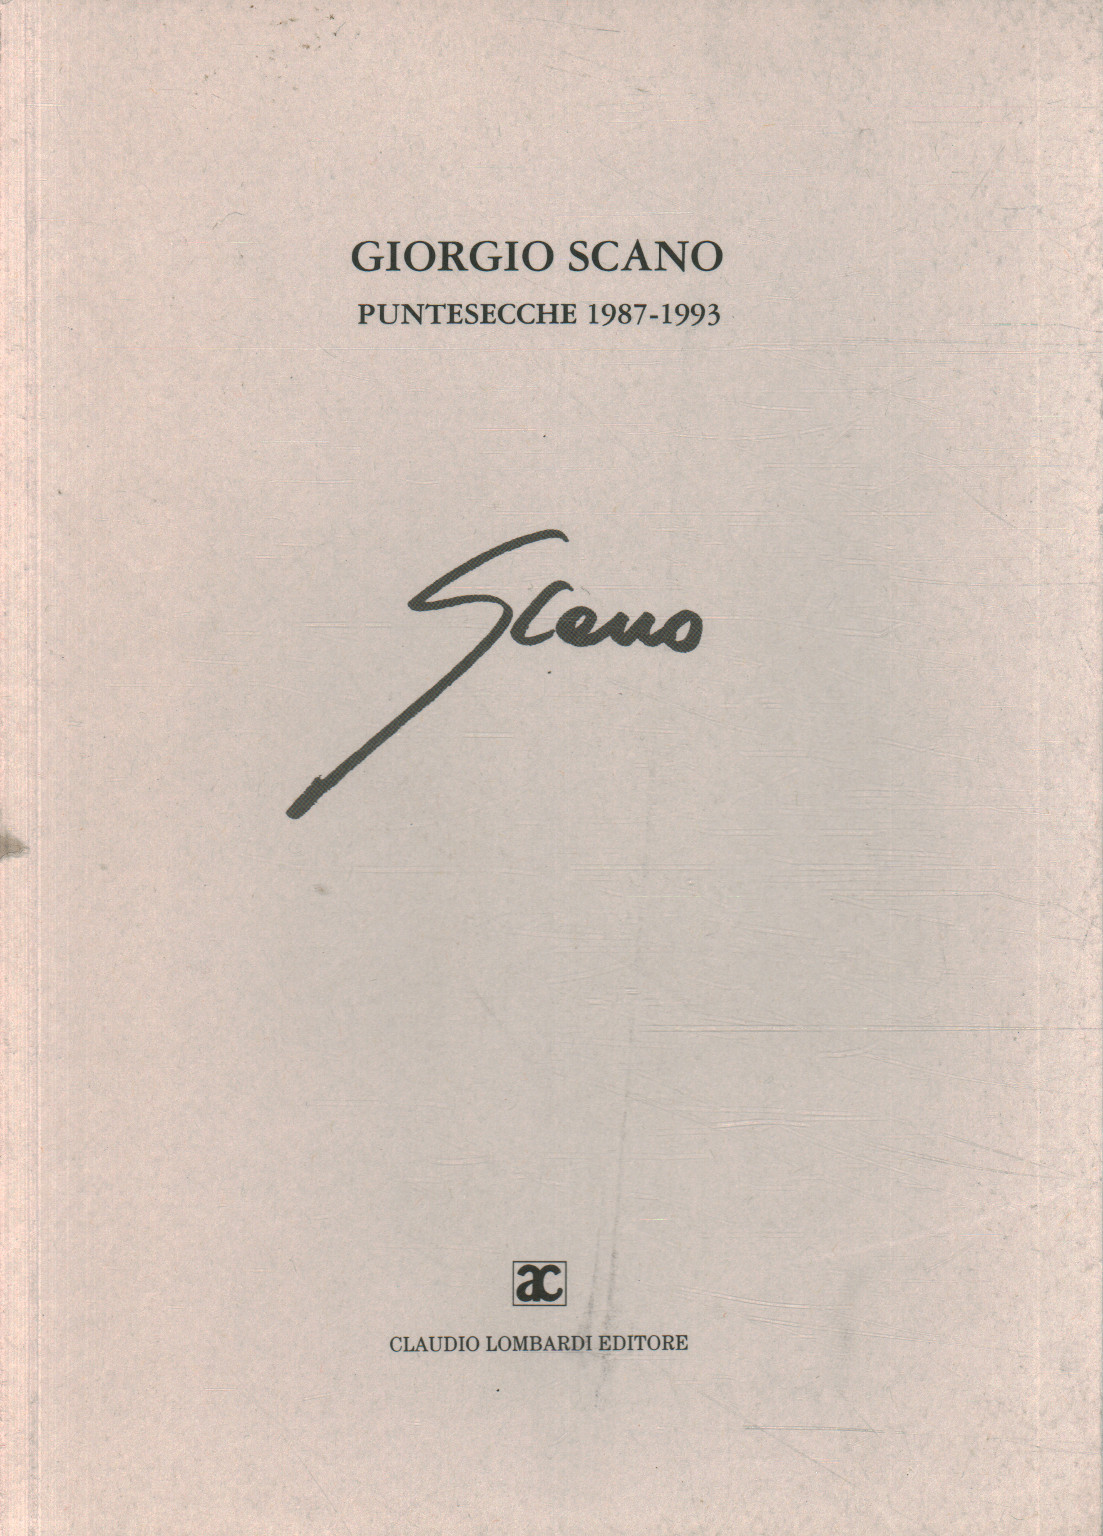 Giorgio Scano. Puntesecche 1987-1993, s.a.